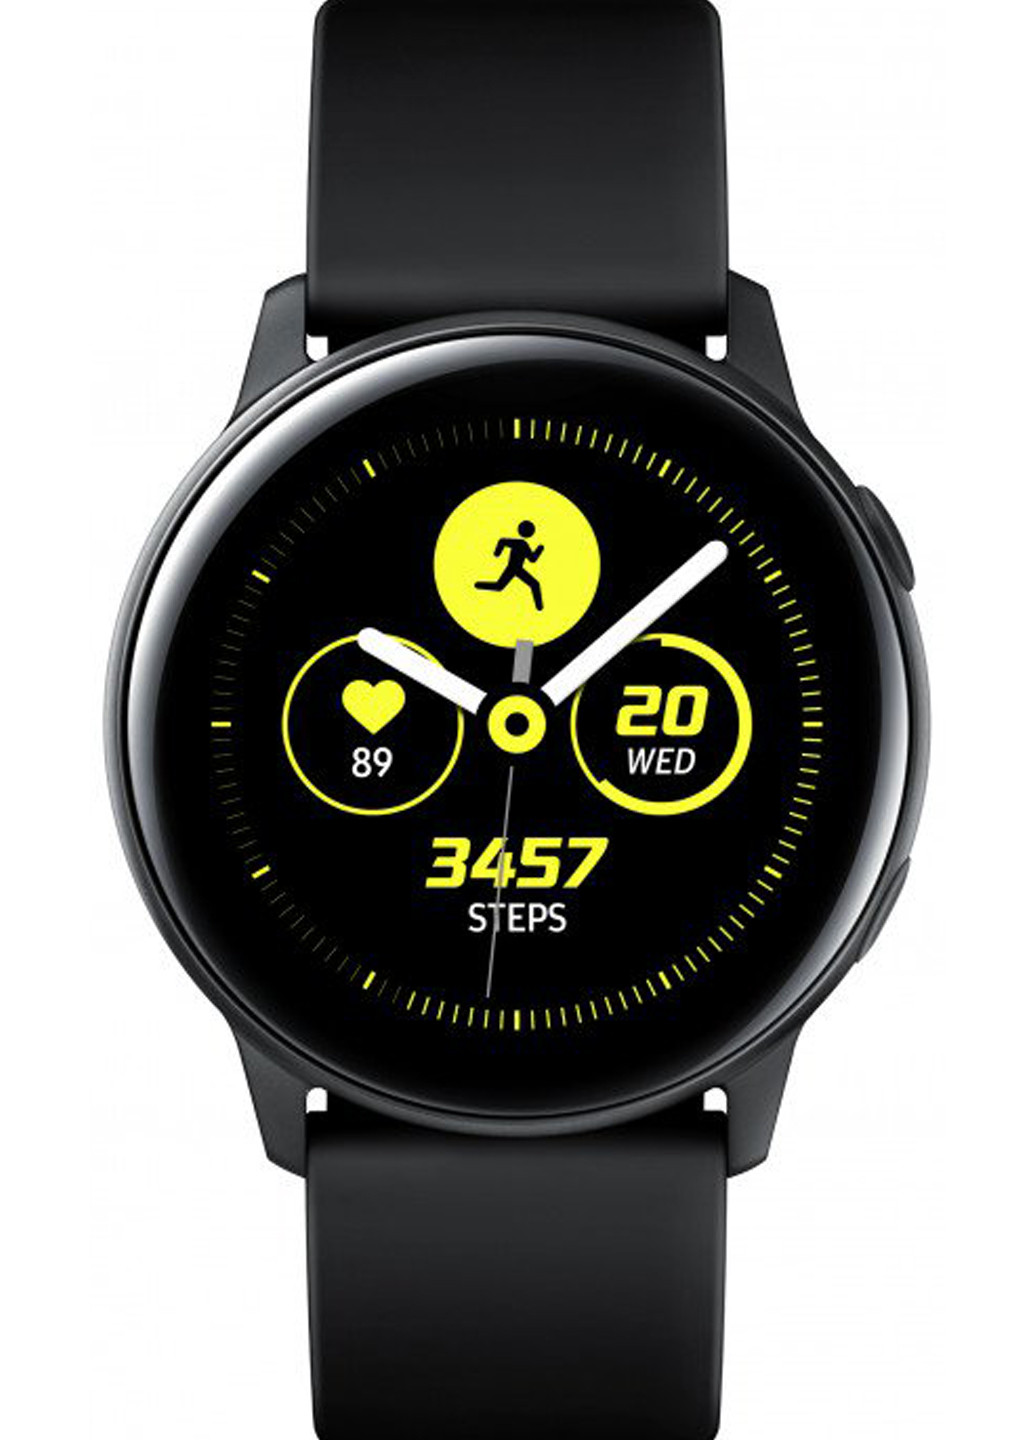 Смарт-часы Galaxy Watch Active (SM-R500) BLACK Samsung Samsung Galaxy Watch Active (SM-R500) BLACK чёрные